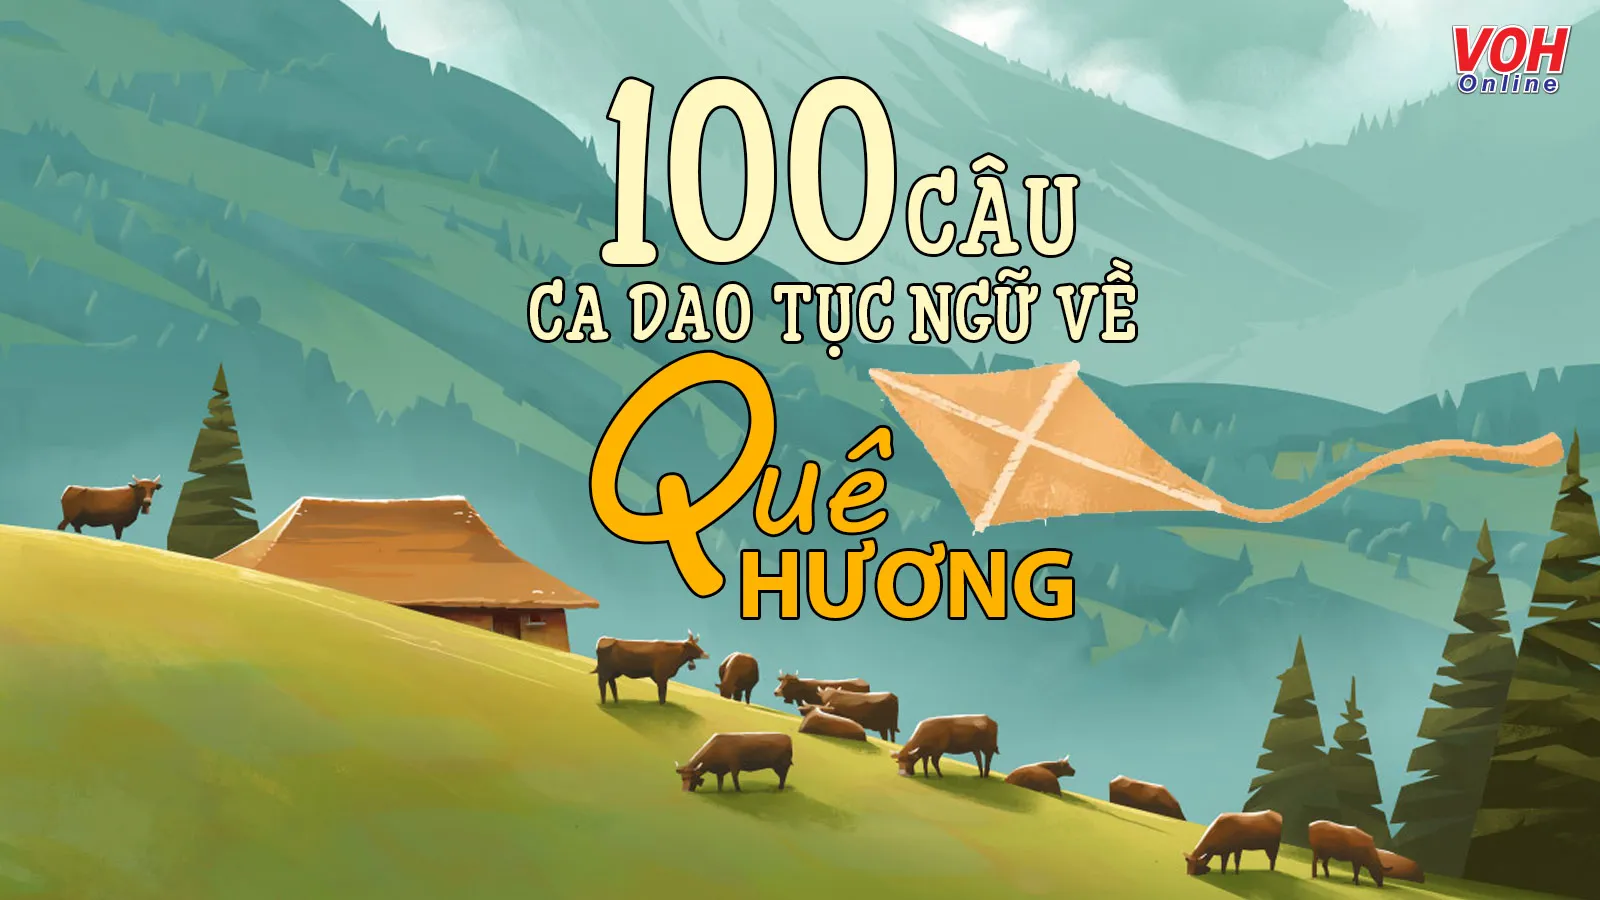 100 câu ca dao, tục ngữ, thành ngữ về quê hương, đất nước, con người Việt Nam